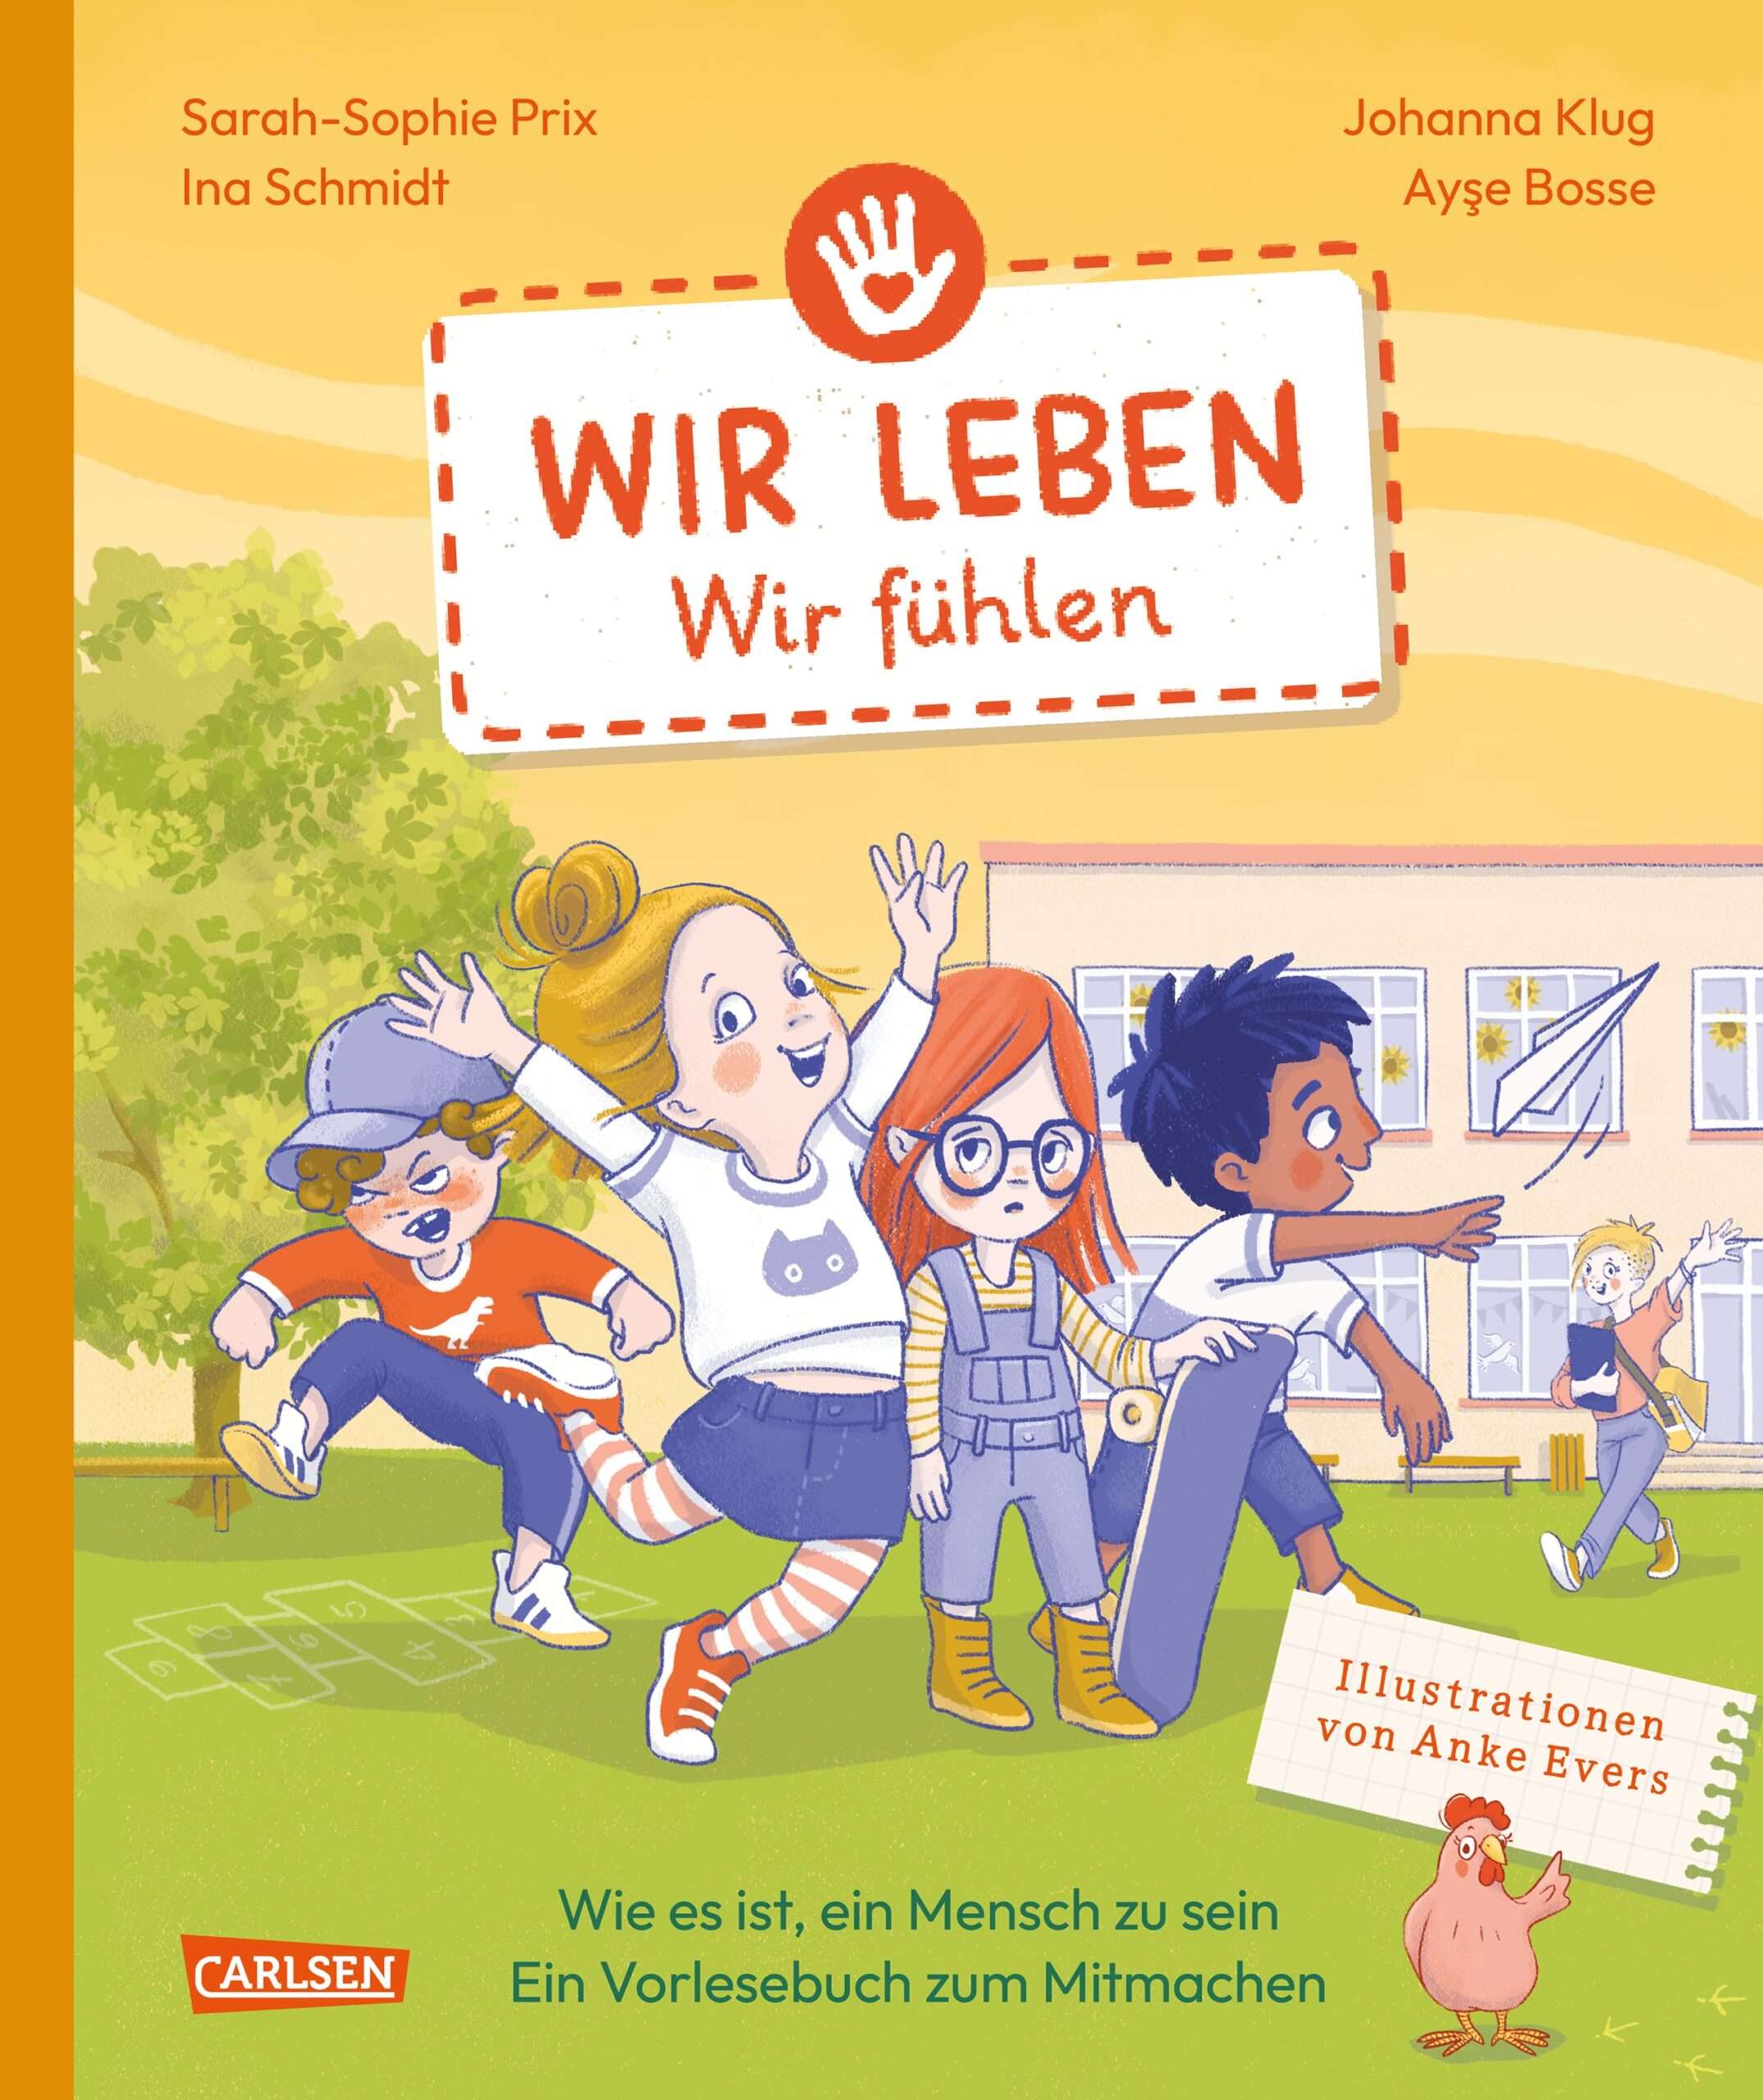 Buchreihe "Wir leben": Band 1: Wir fühlen (Cover)